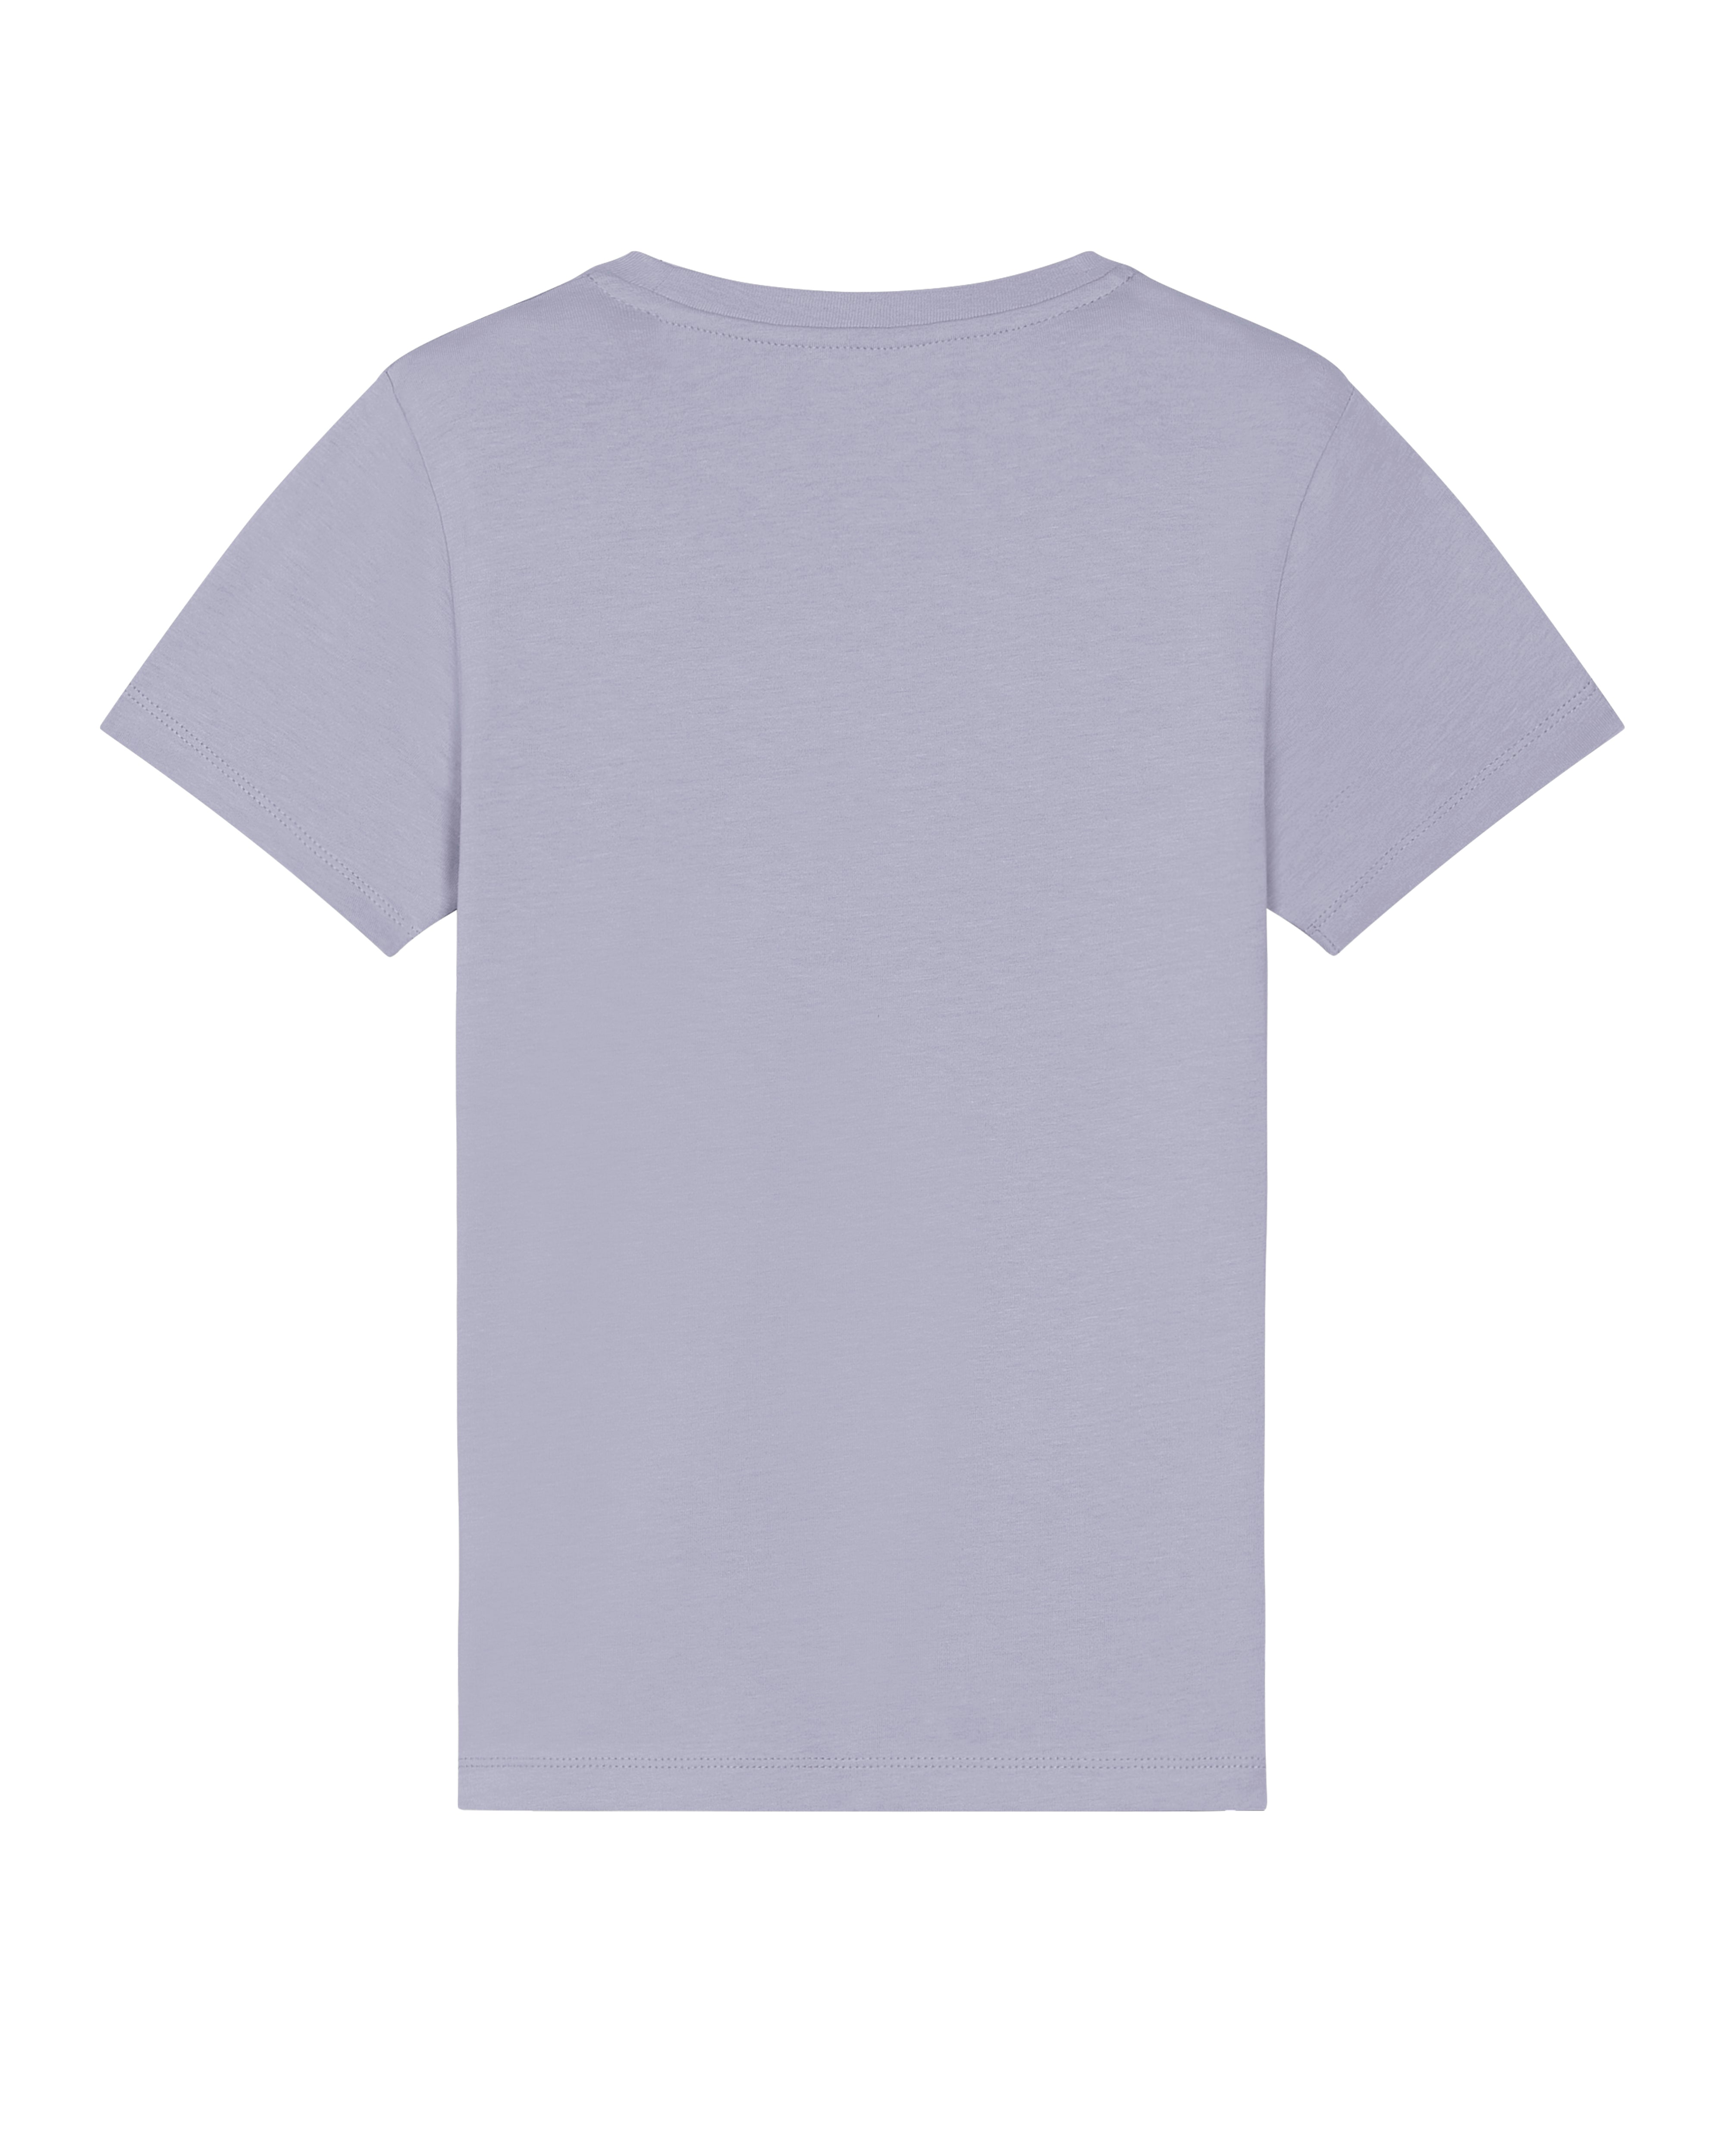 T-Shirt Enfant Poisson Dieppois Lavende